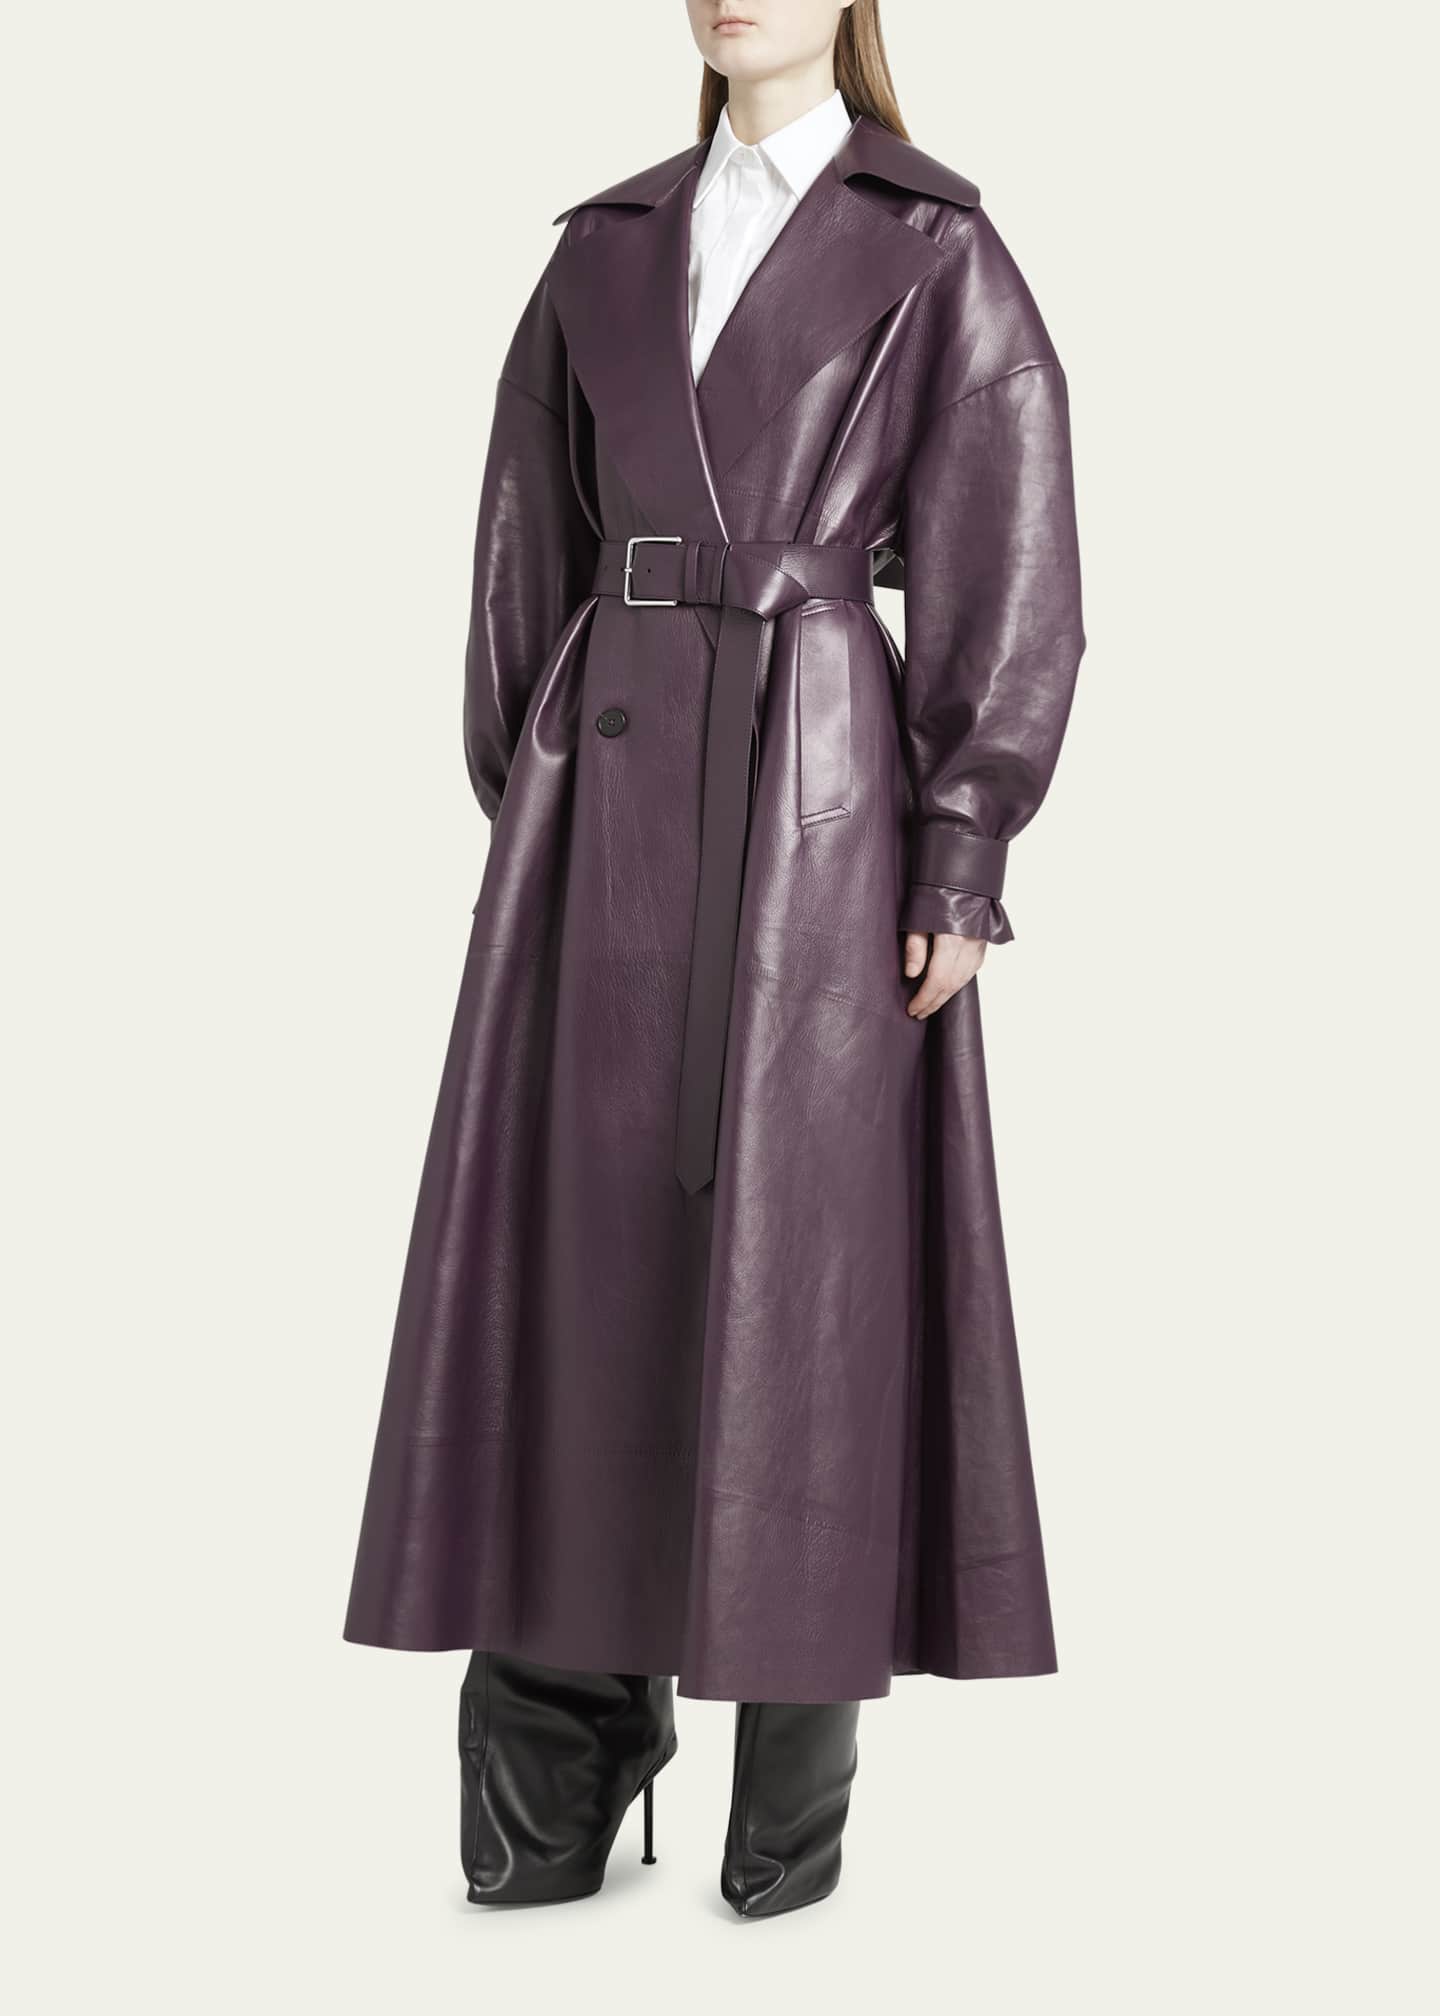 Alexander McQueen Oversize Belted Leather Trench Coat - Bergdorf Goodman